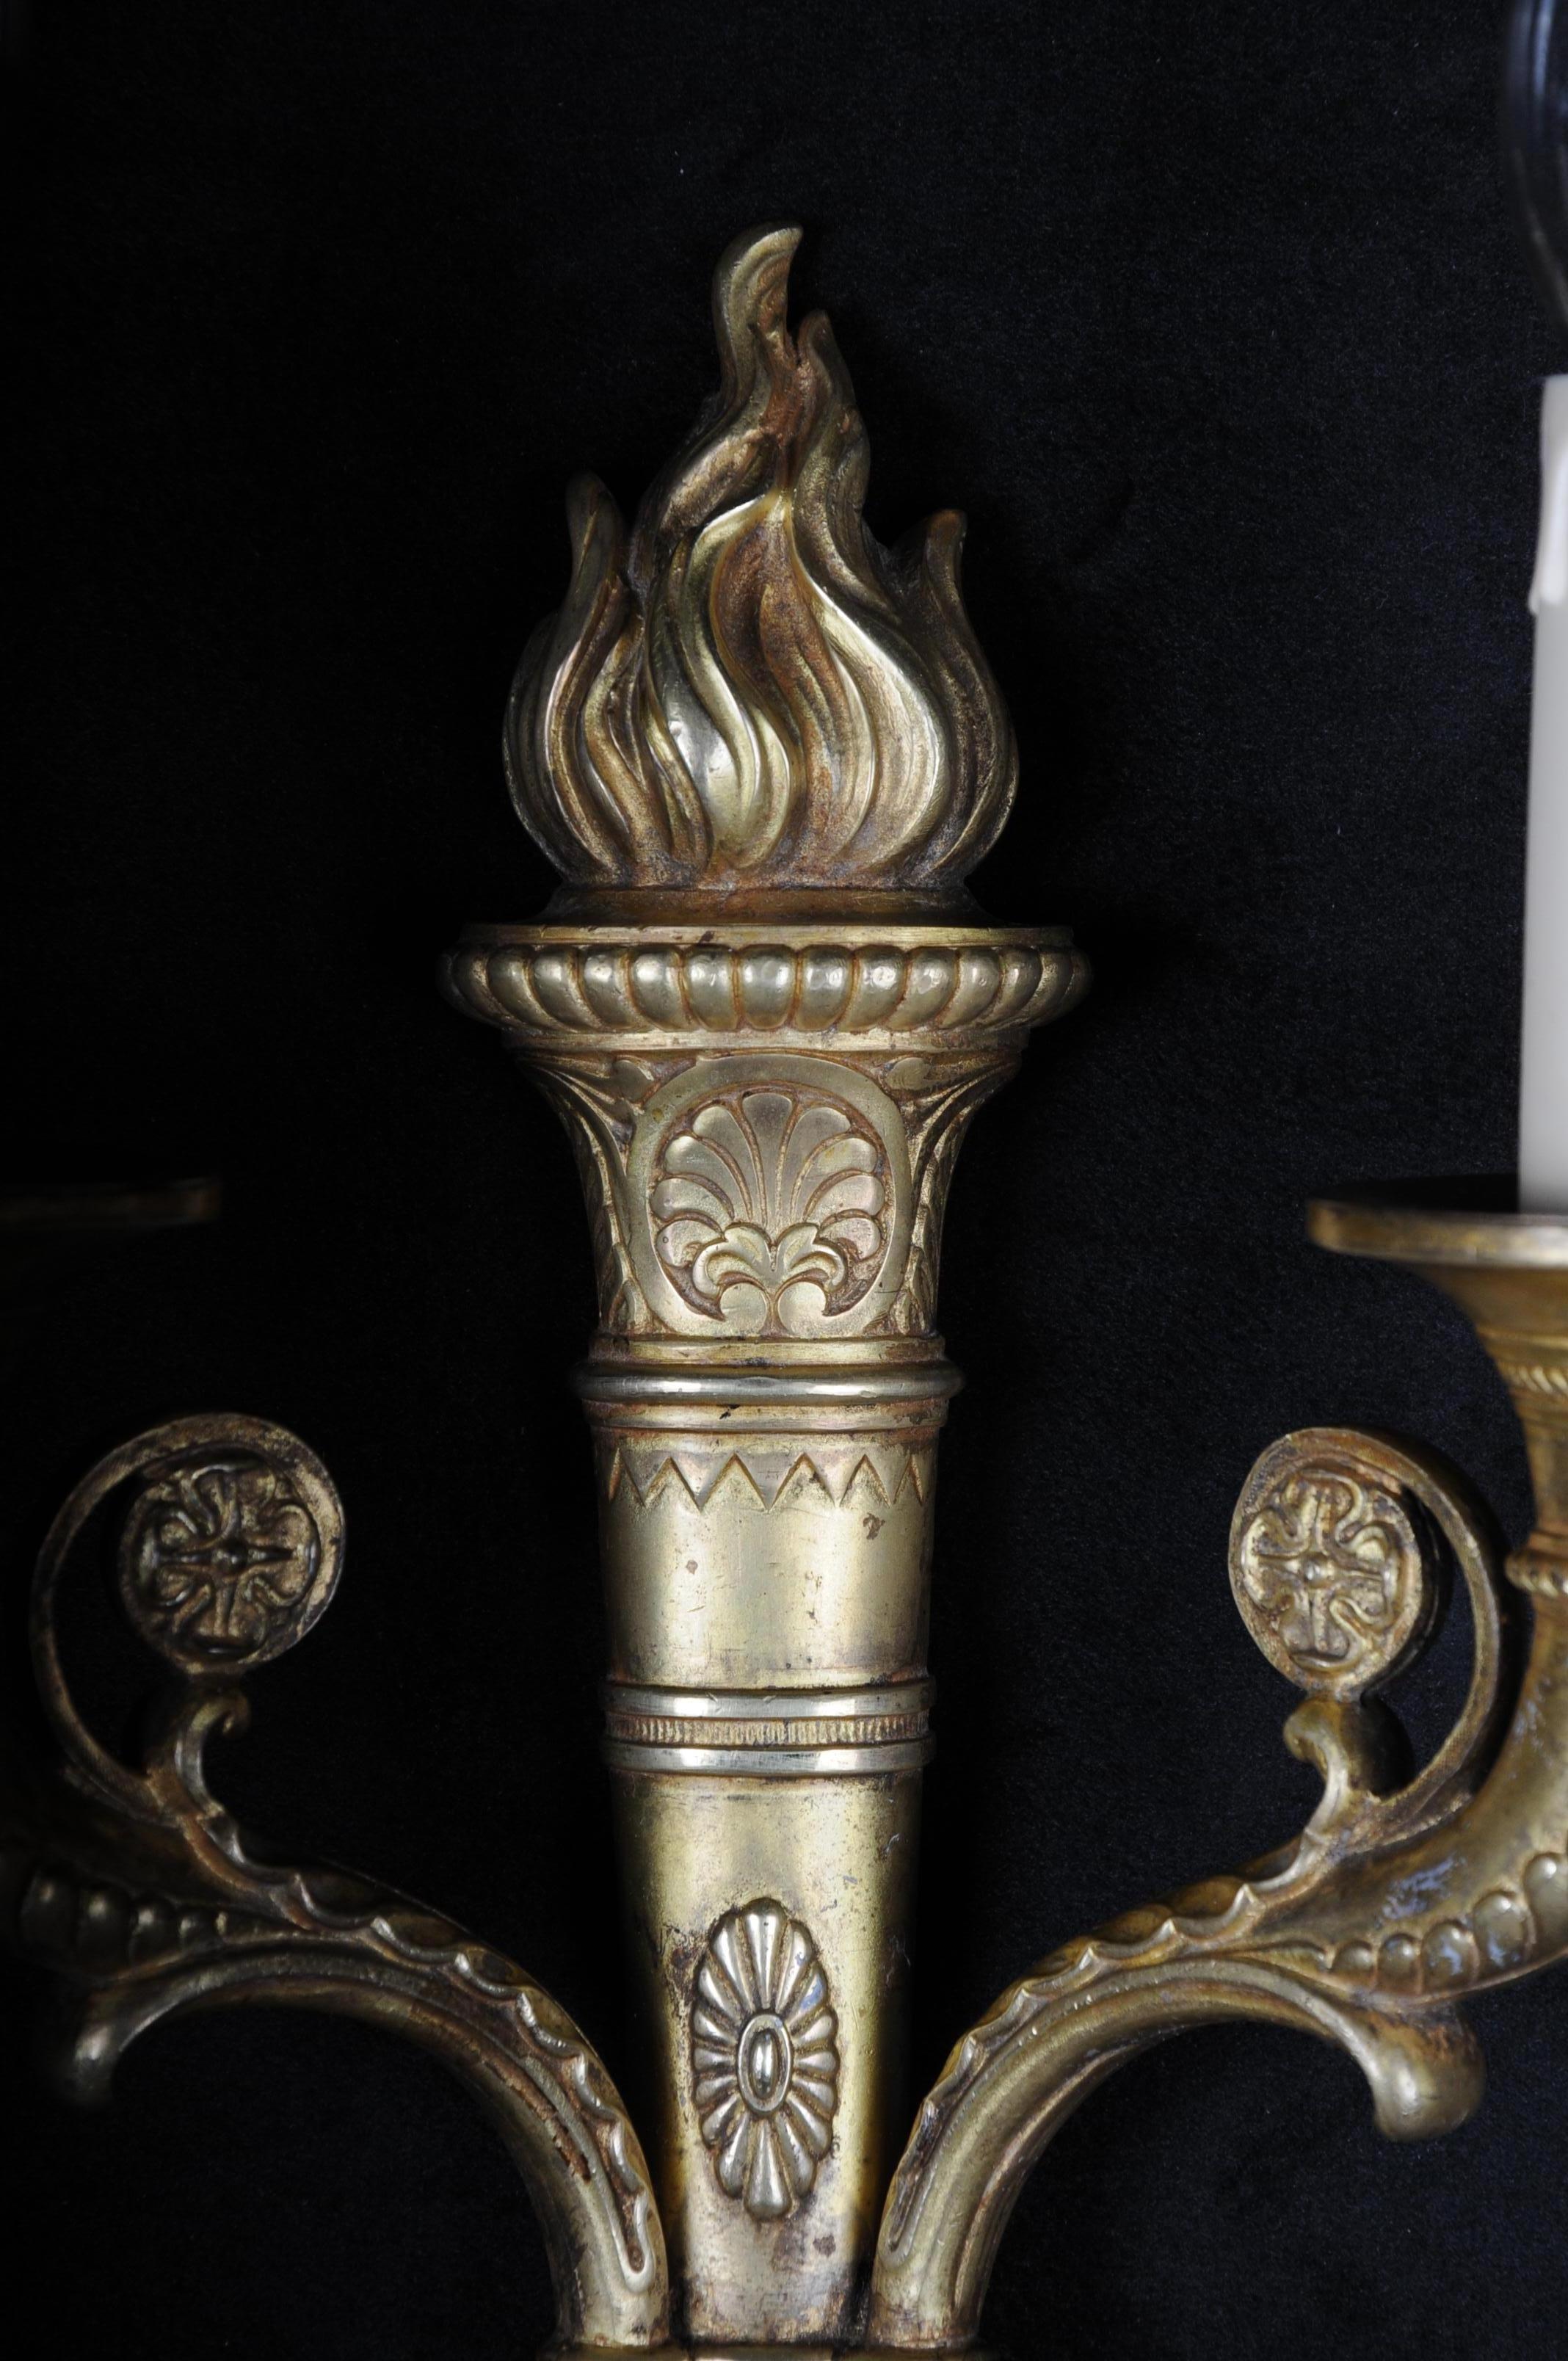 Französische Wandleuchter-Applikation im Empire-Stil um 1900 Bronze
Vergoldete Bronze, fackelförmiger Schaft, zwei Arme in Form eines Füllhorns. Elektrifiziert.

(F-105).